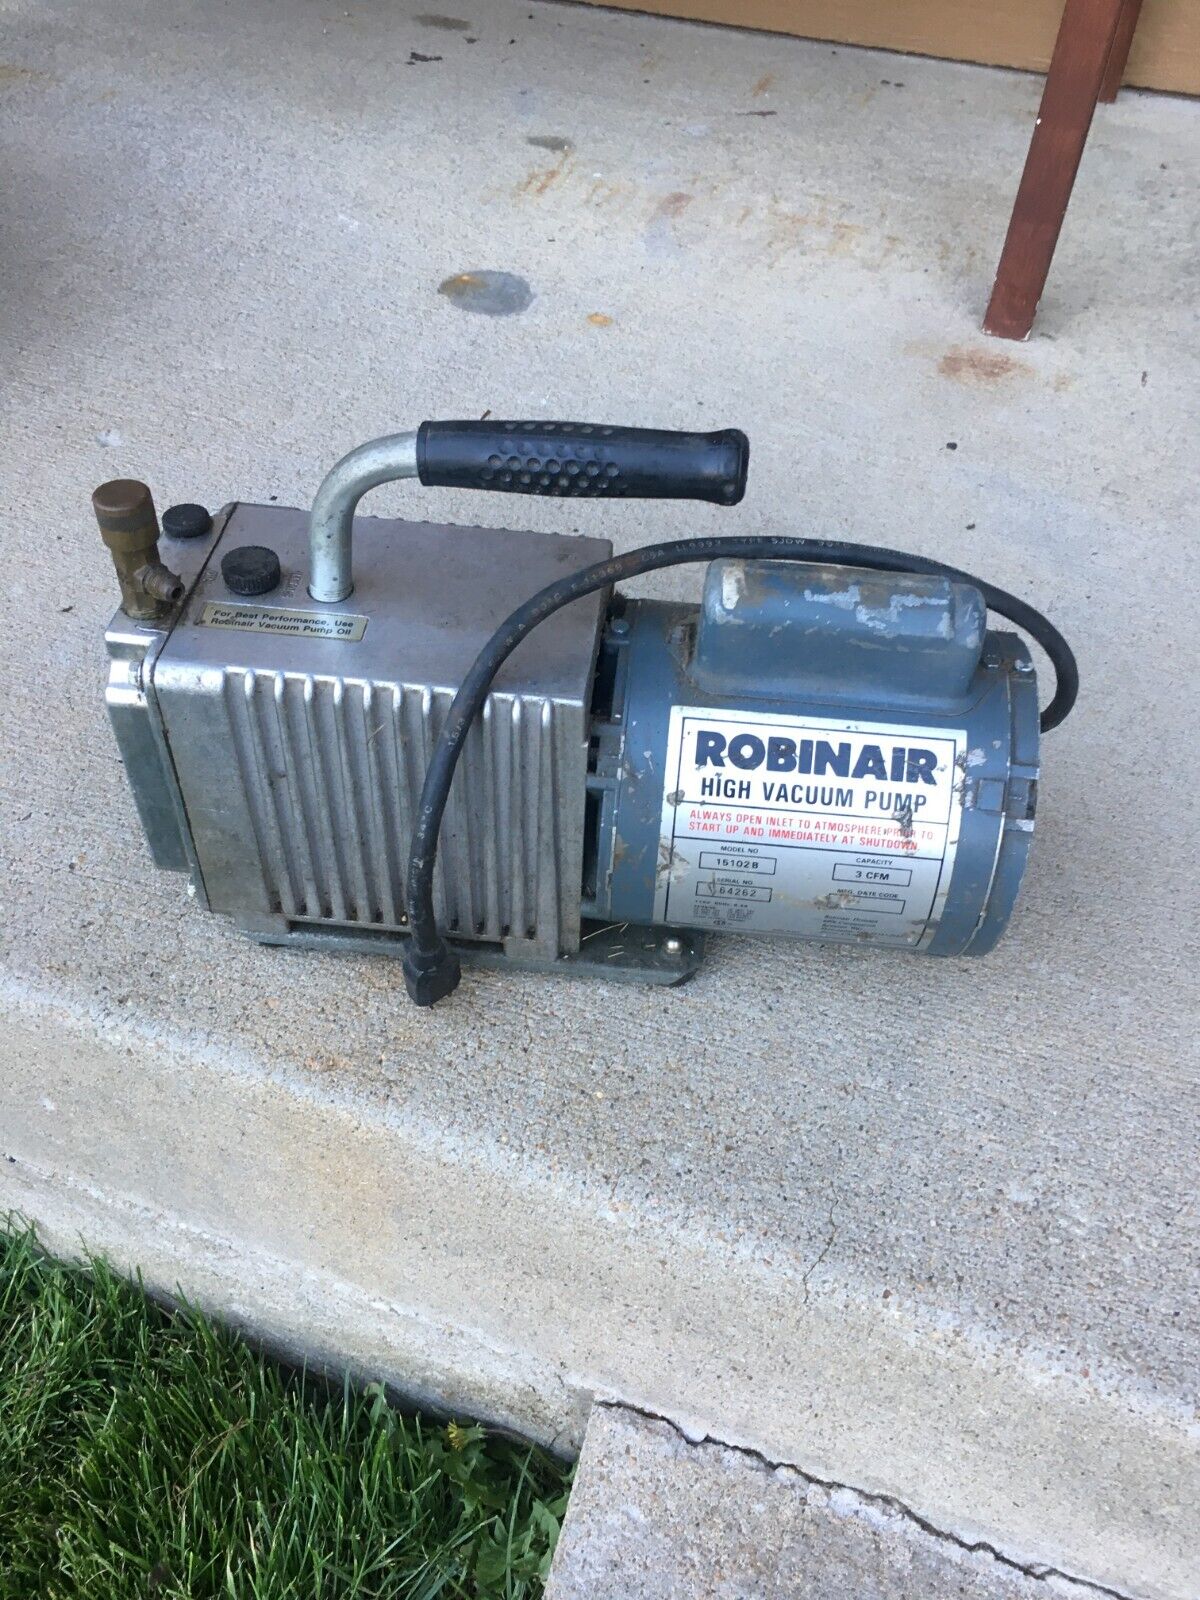 Robinair High Vacuum Pump